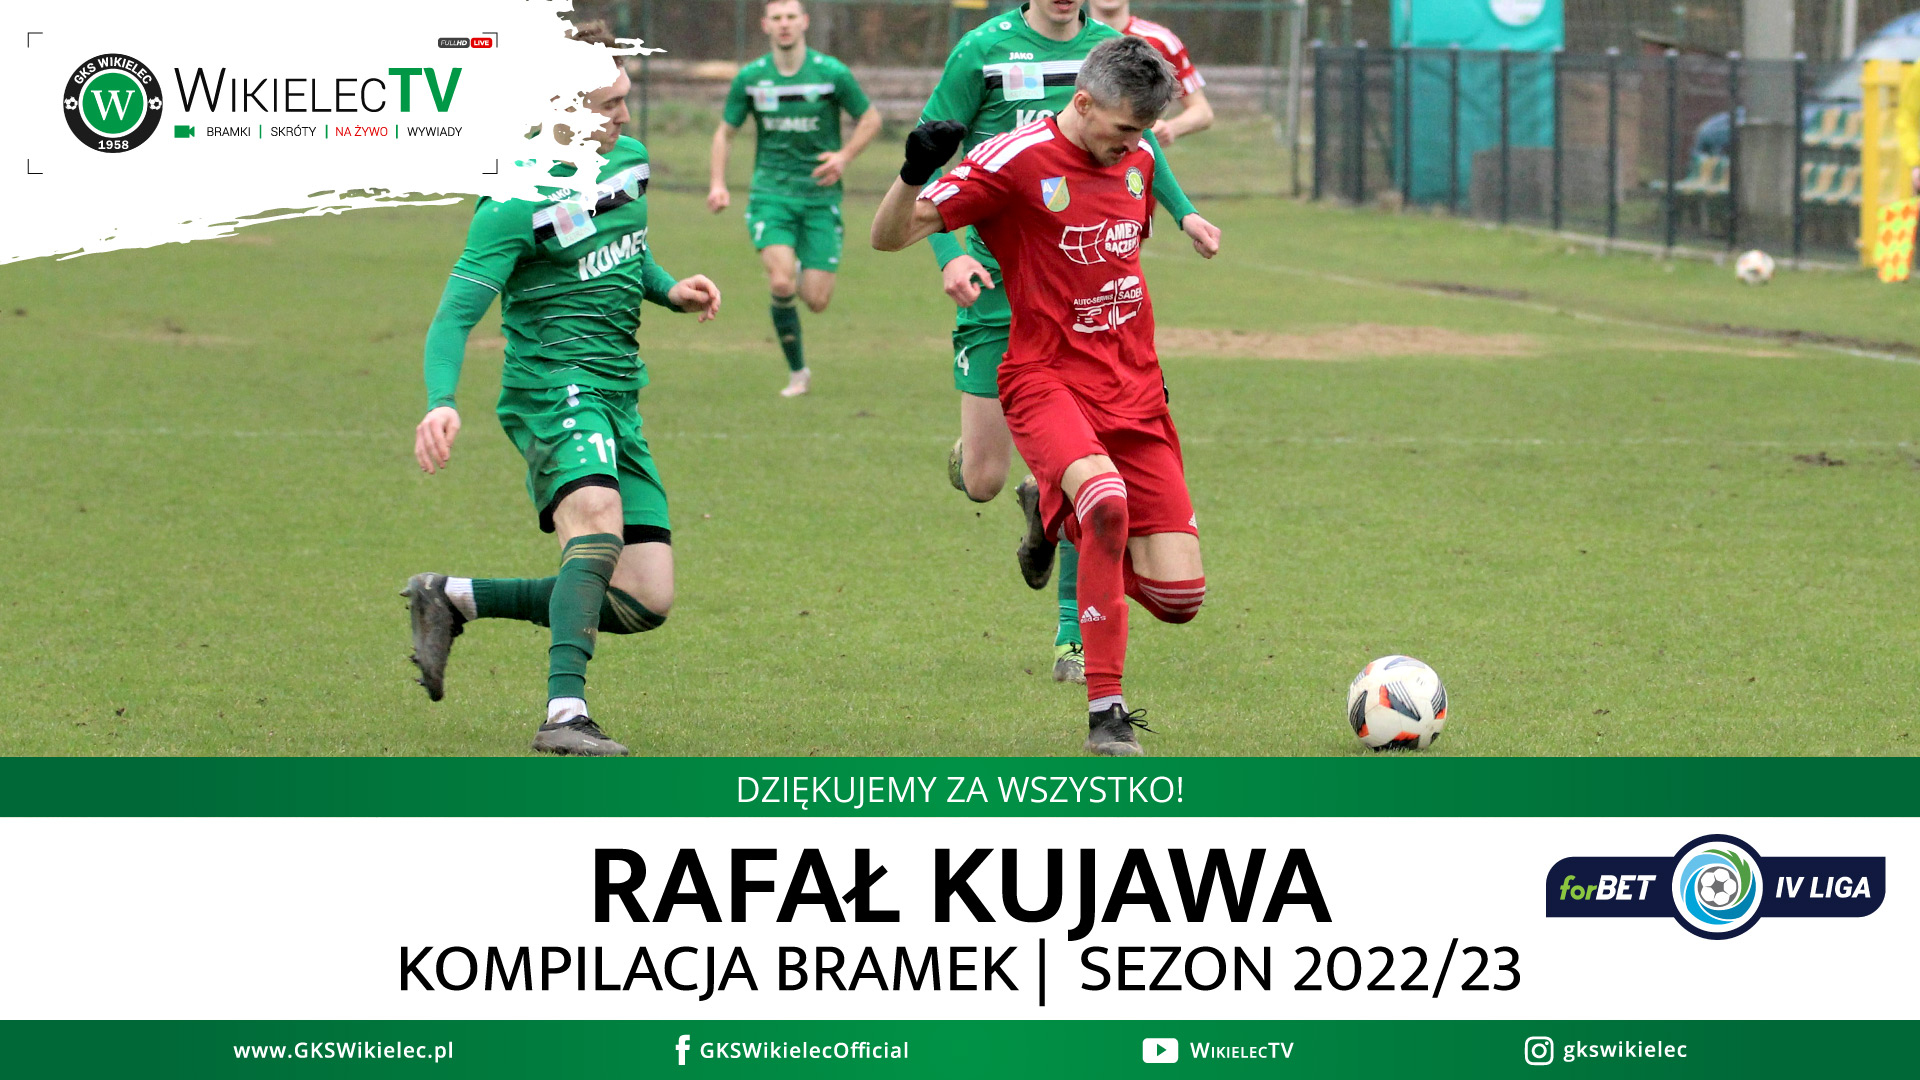 WikielecTV: Rafał Kujawa - wszystkie bramki w forBET IV lidze 2022/23